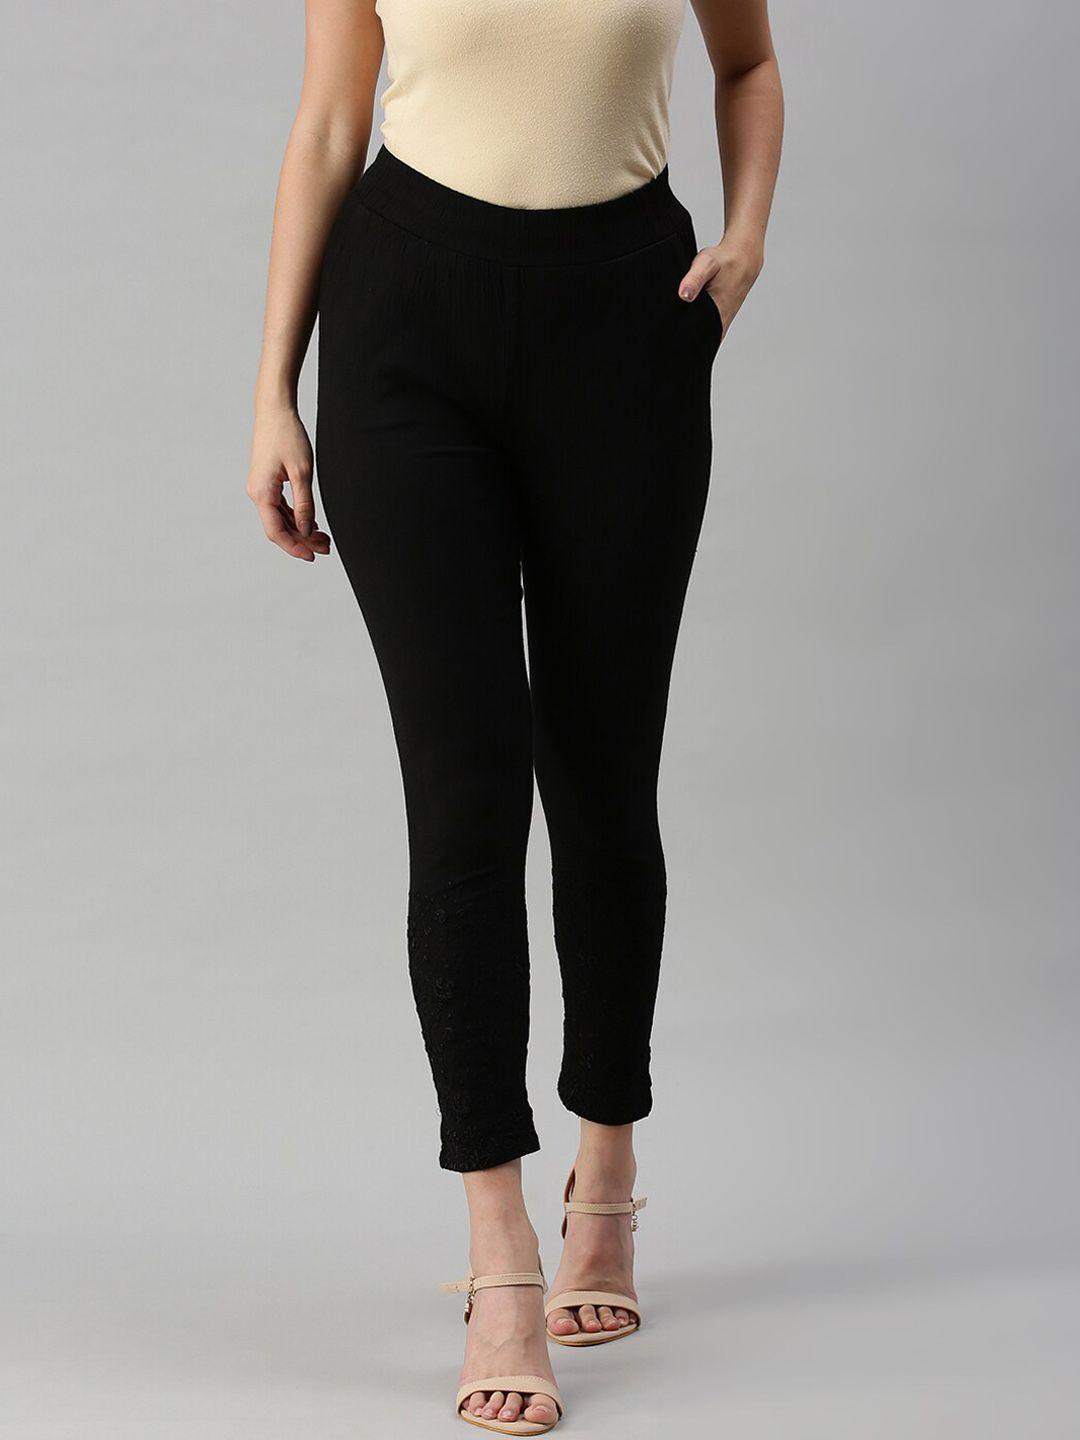 soch women black solid slim fit trousers